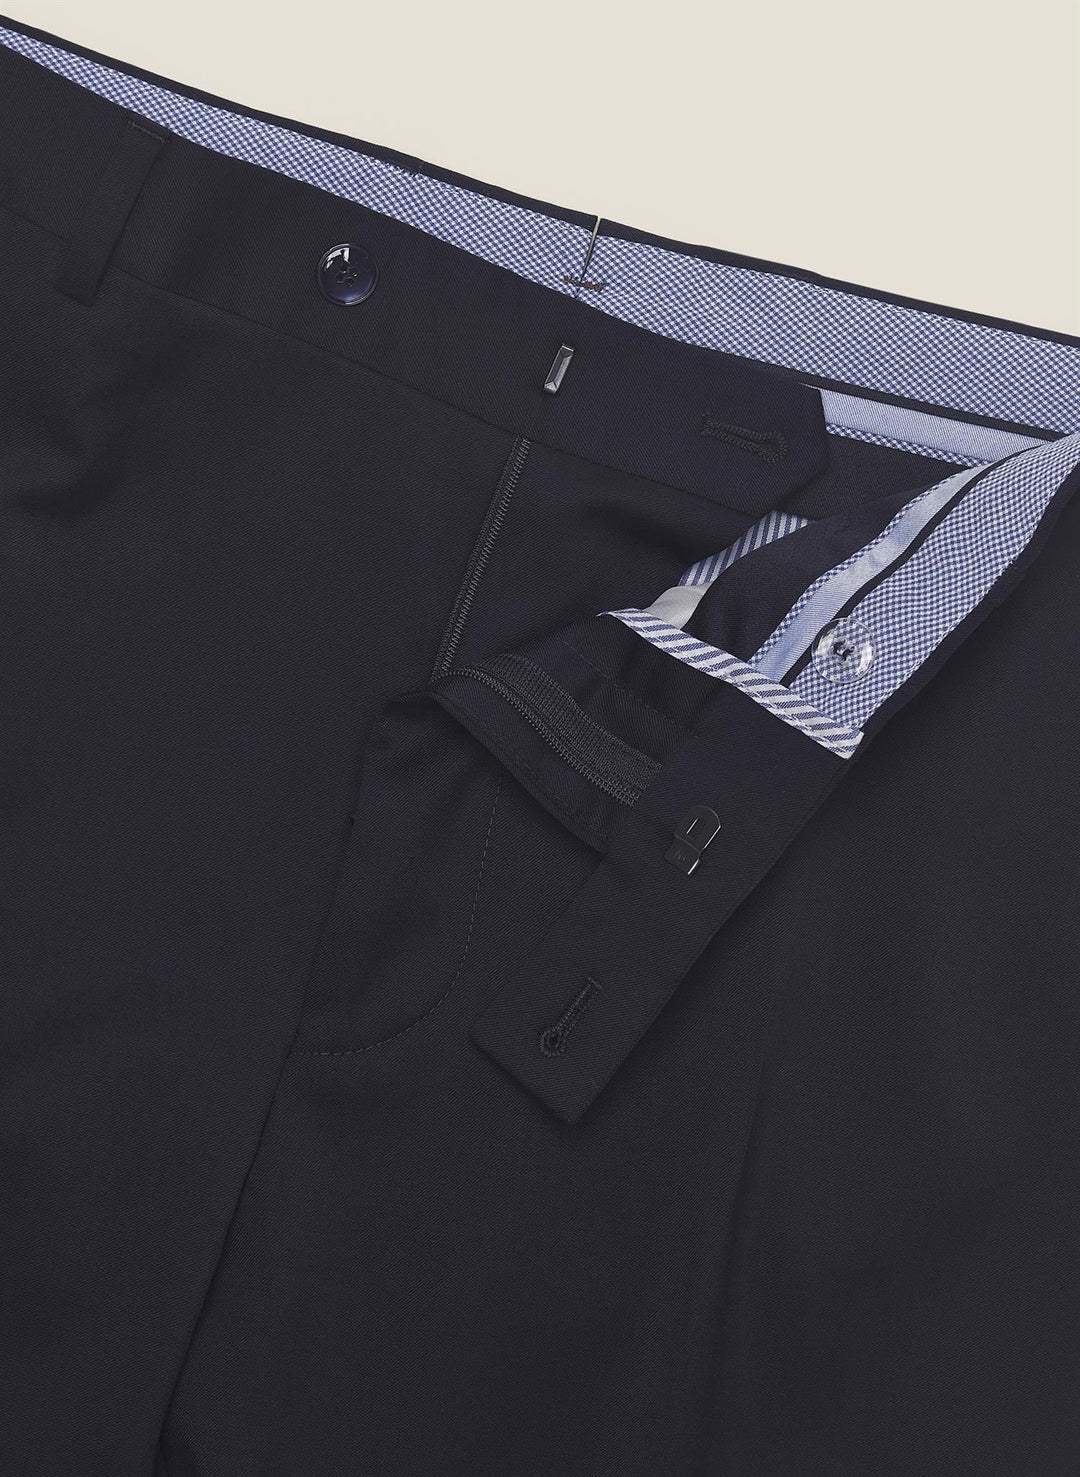 Jack Prestige Suit Trousers Navy